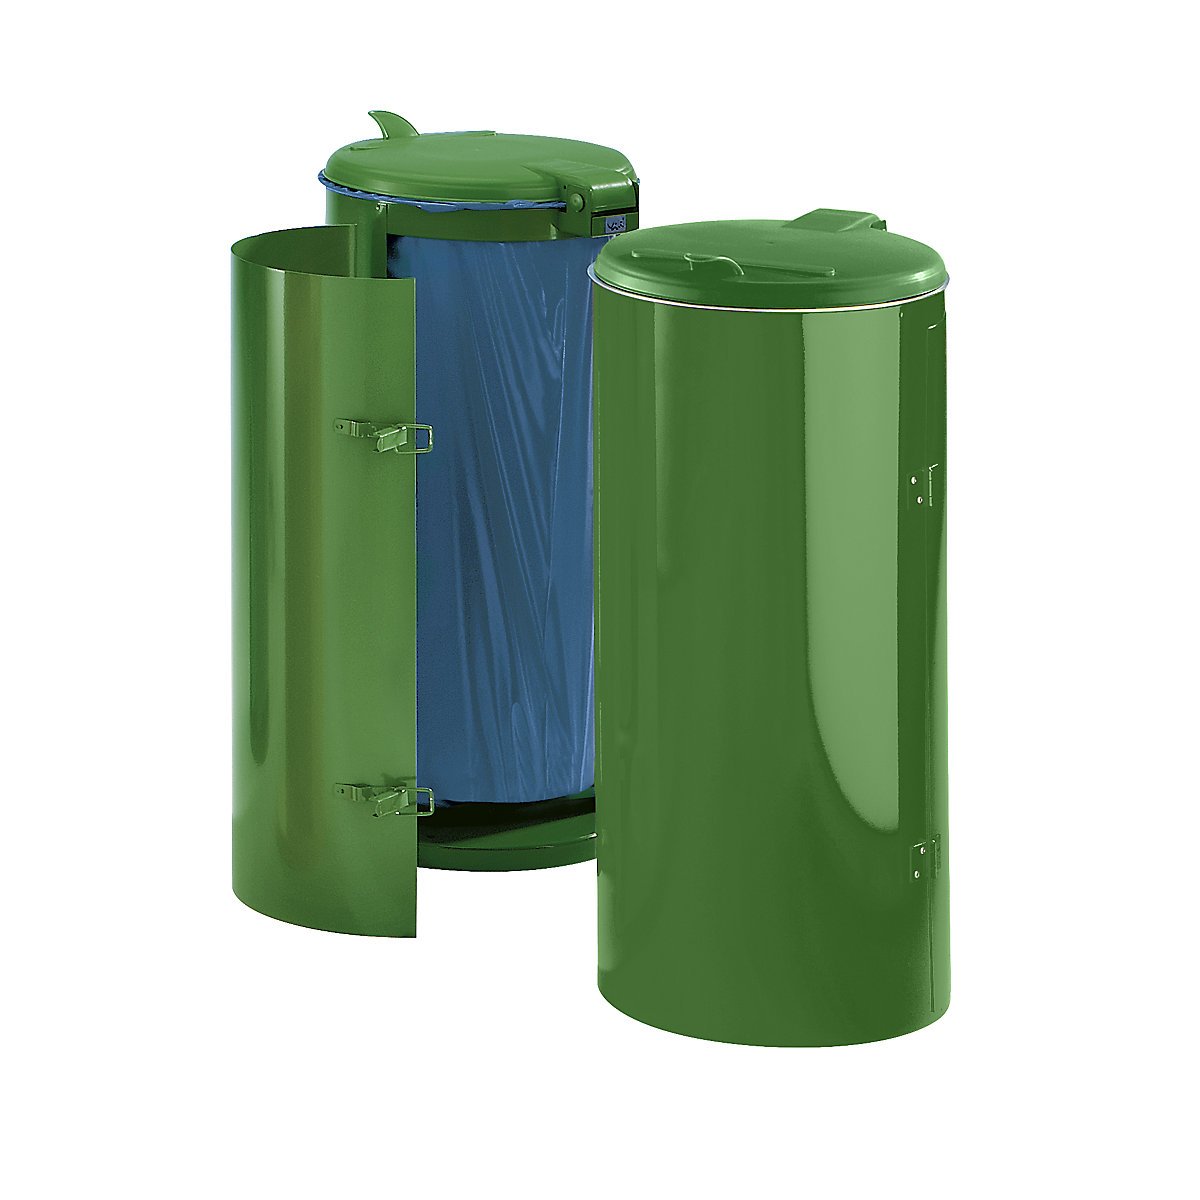 Coletor de lixo de chapa de aço – VAR, para volumes de 120 l, com porta de um batente, verde com tampa em plástico verde-5